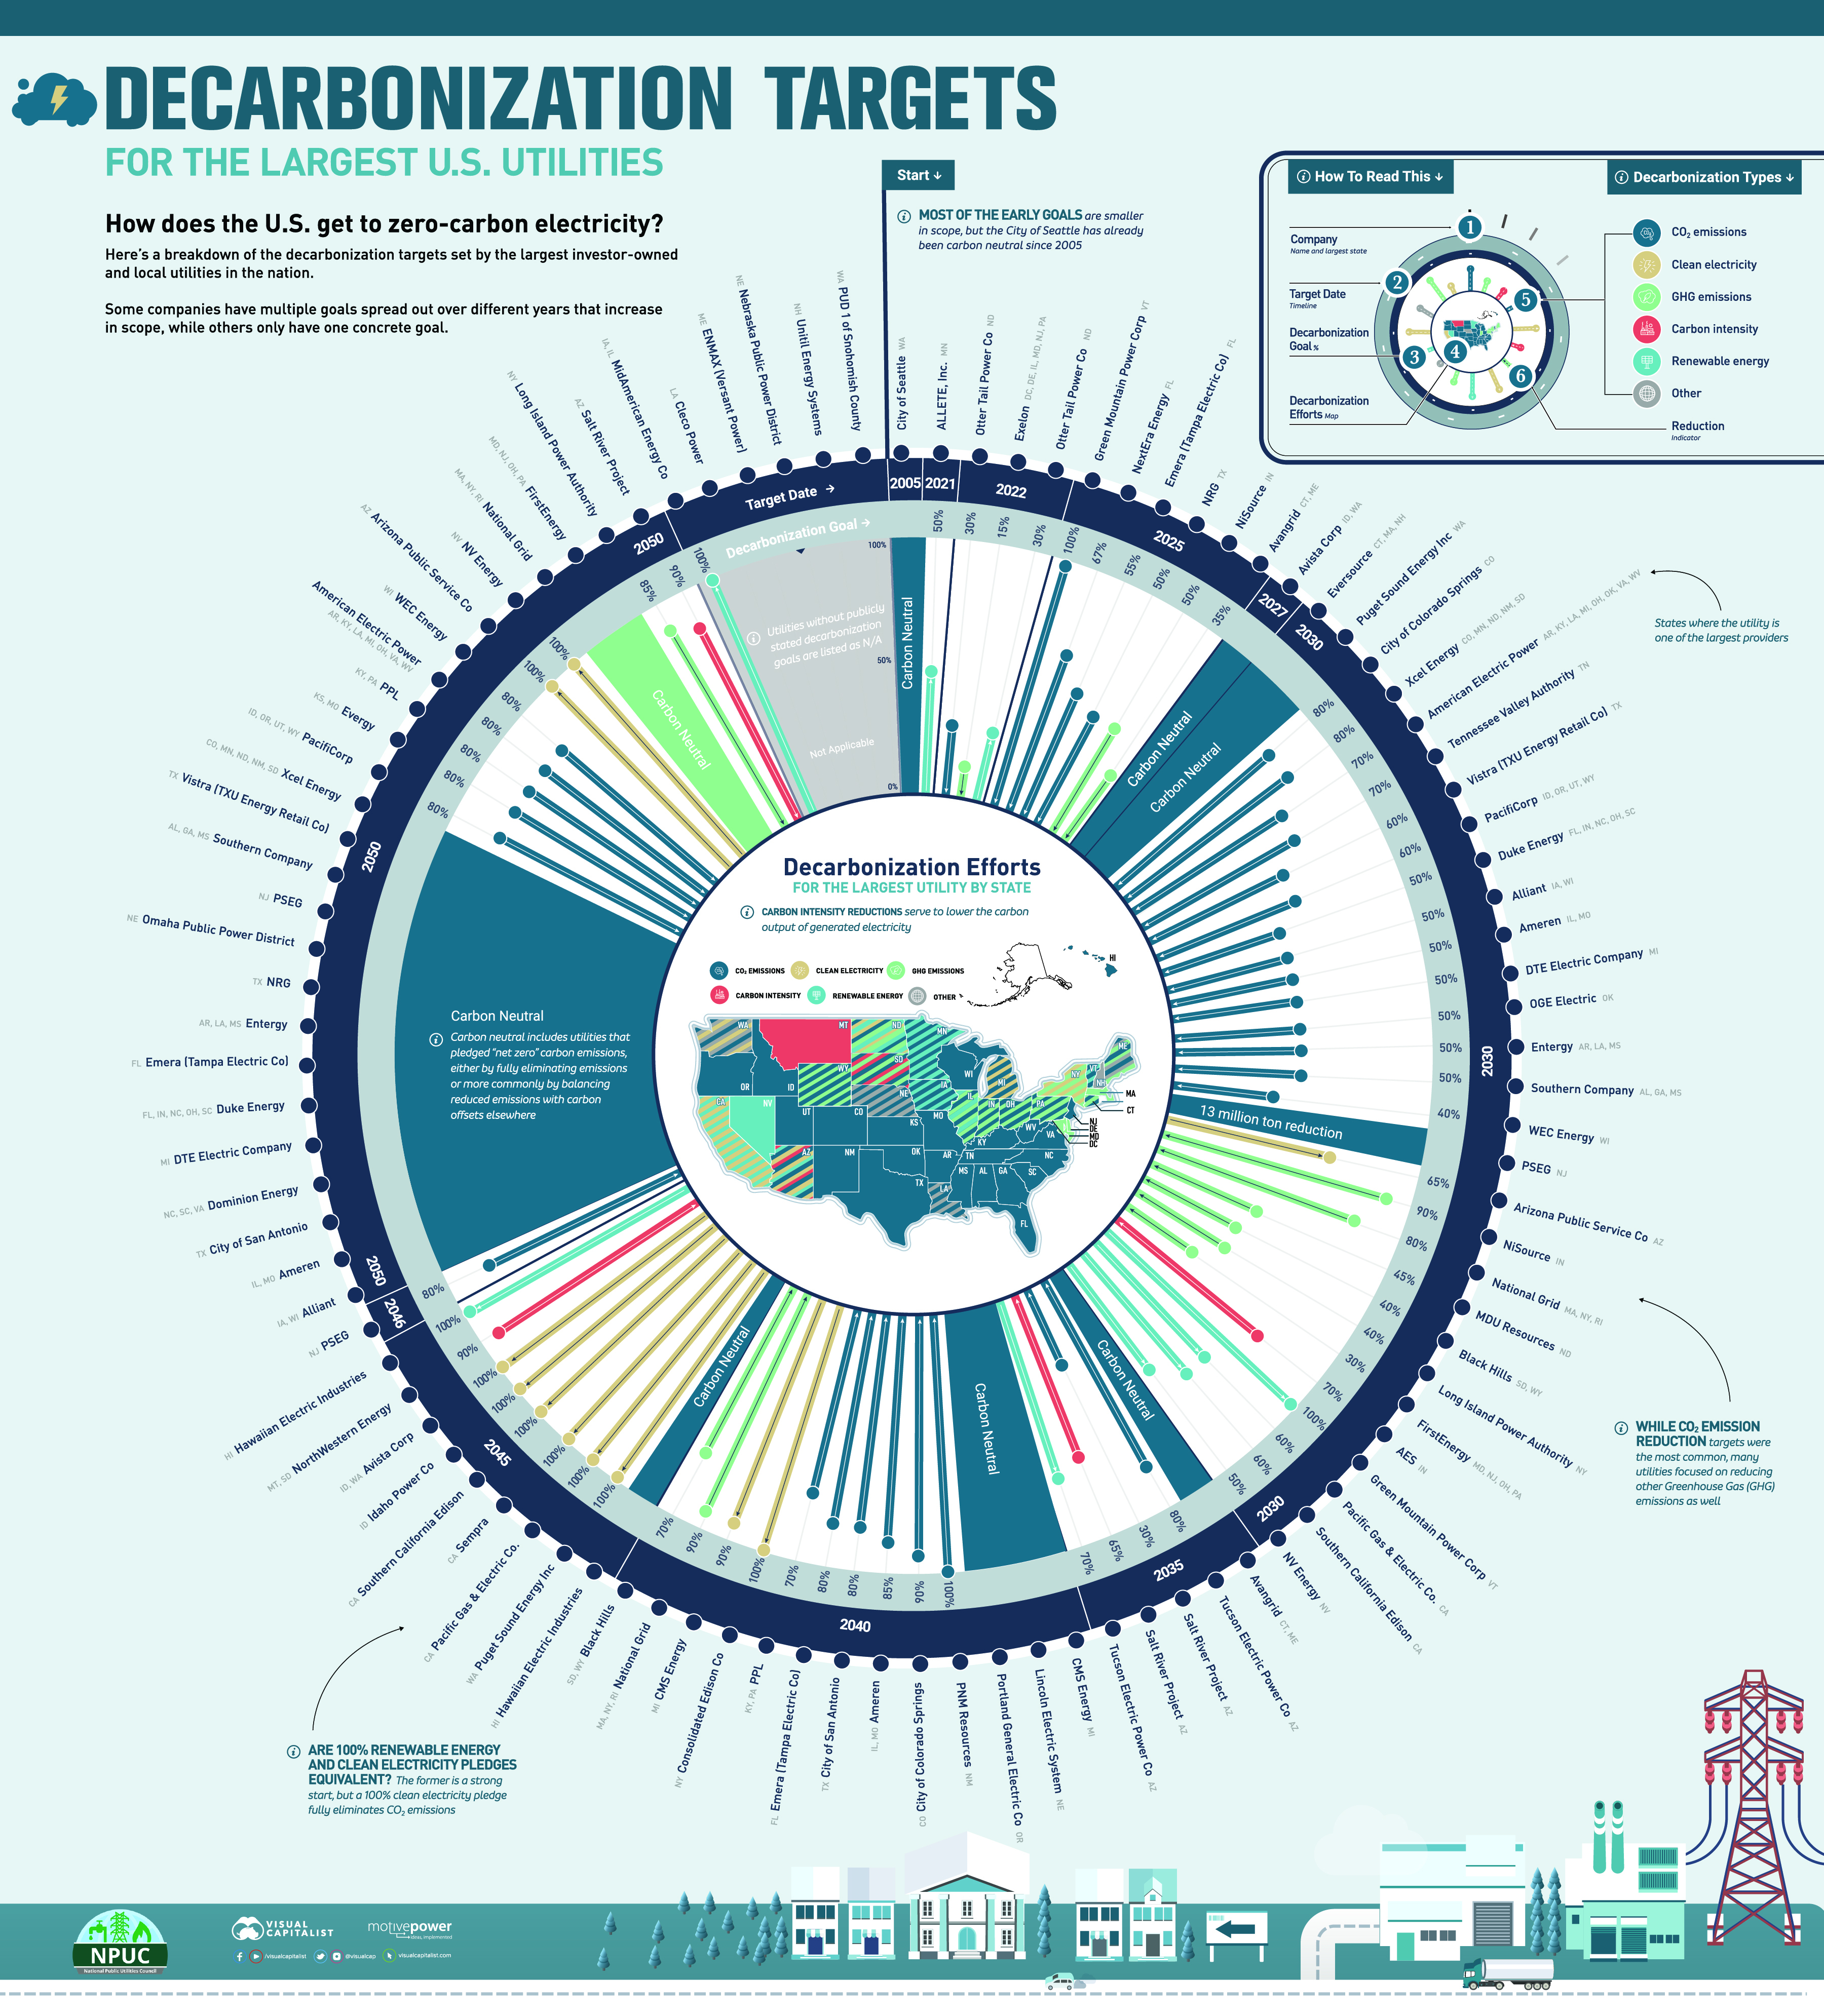 NPUC - Decarbonization Utilities Map